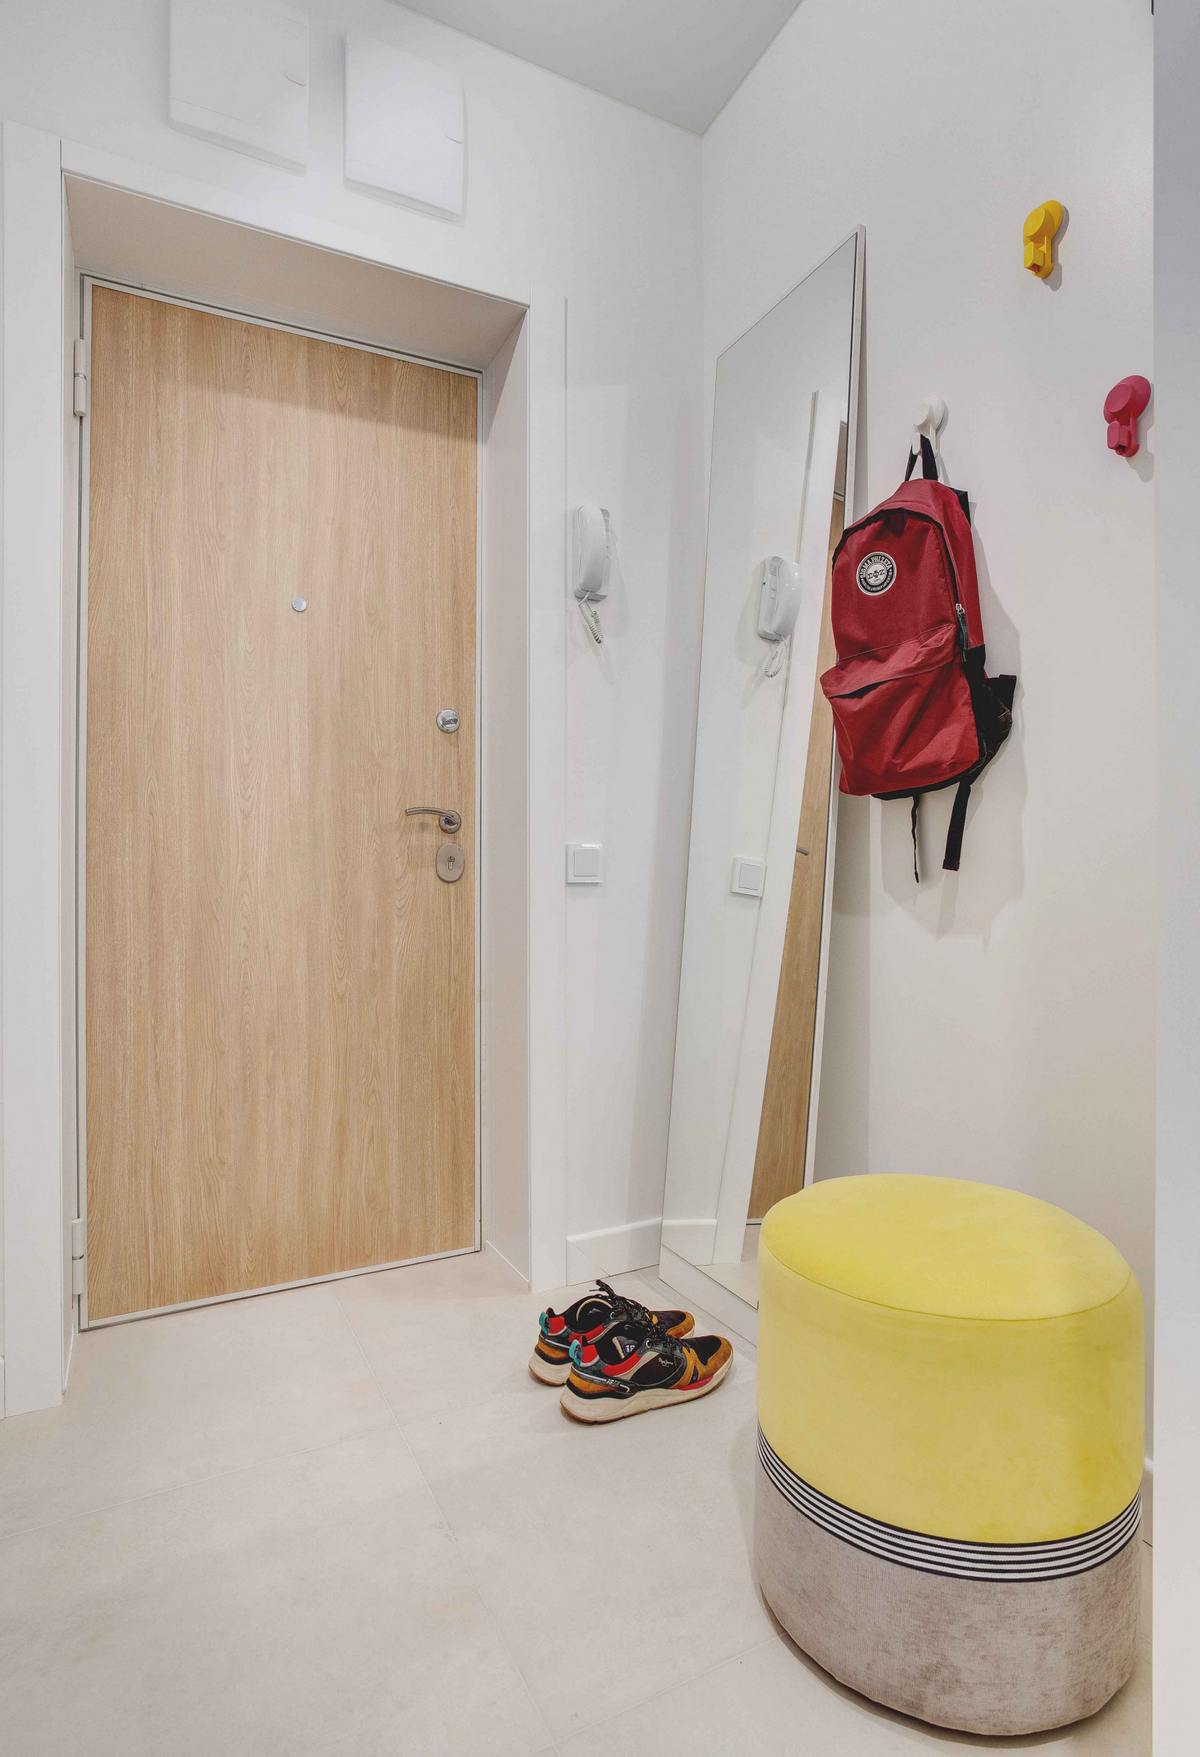 Lối vào căn hộ với cánh cửa gỗ ấm áp nổi bật trên phông nền trắng chủ đạo. Một tấm gương dài cùng những chiếc móc treo đồ nhỏ gọn, ghế đôn êm ái cho khu vực nhỏ thêm tiện nghi.